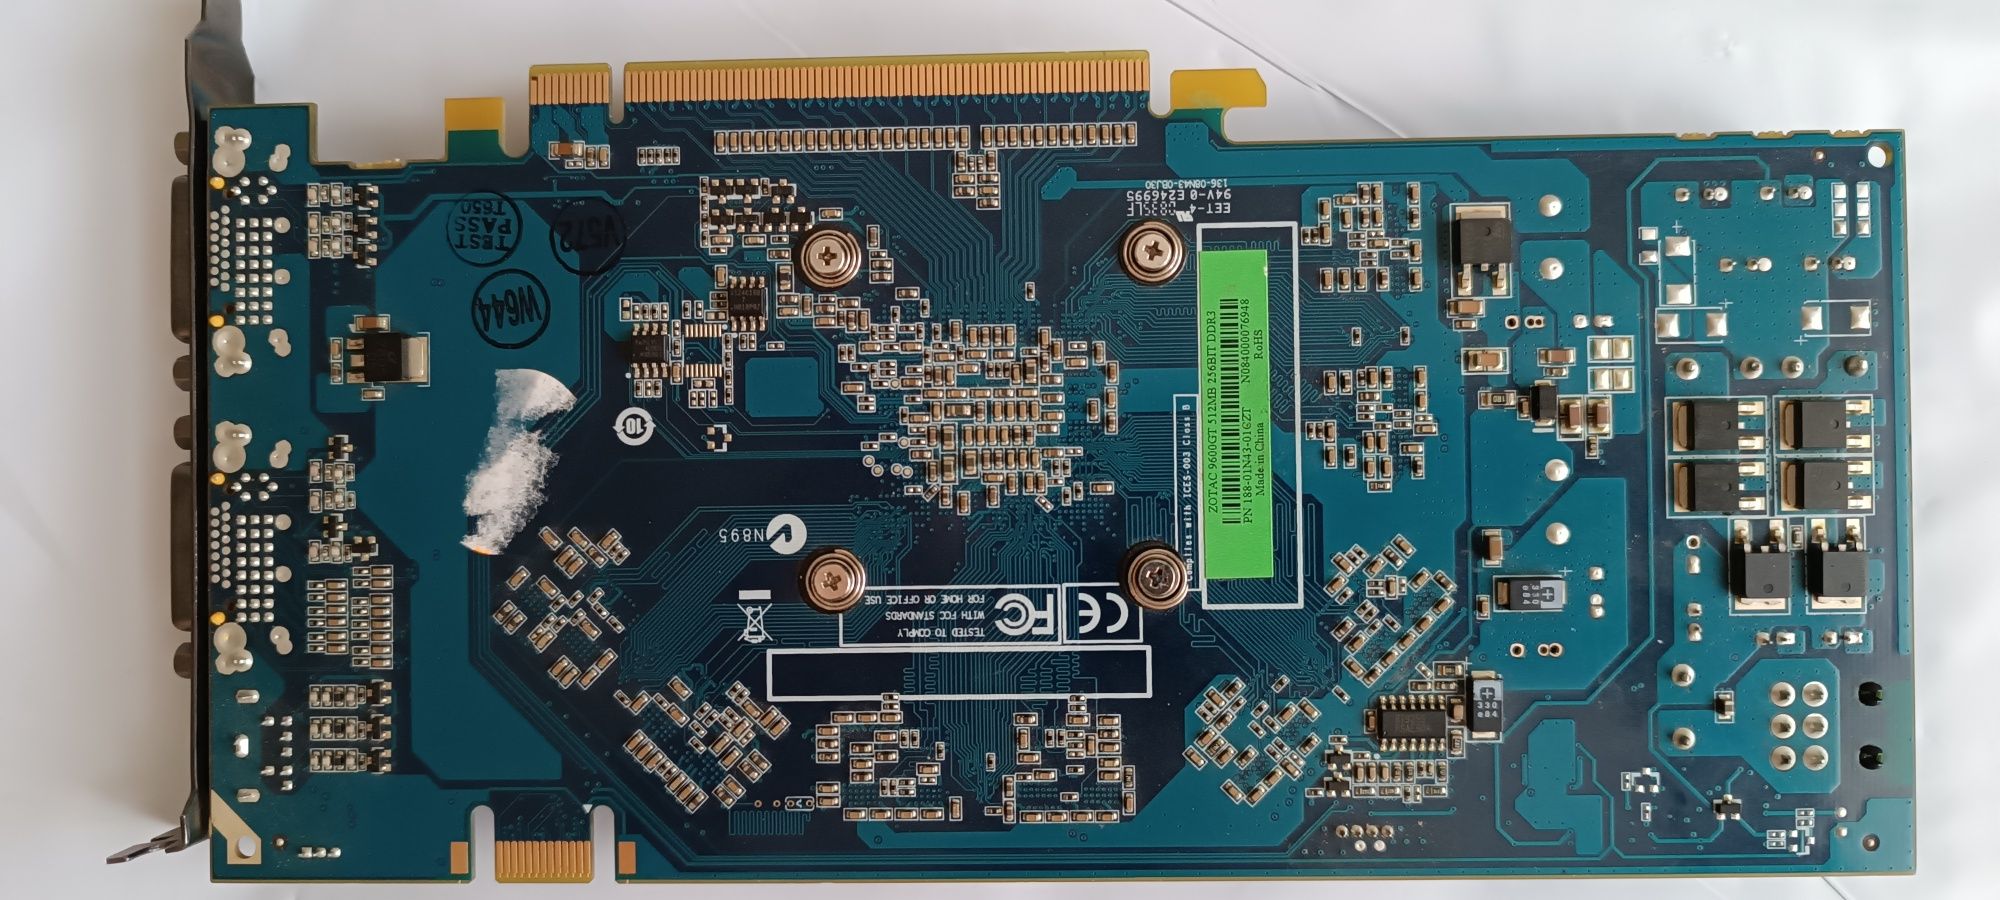 Видеокарта ZOTAC Ge Force 9600GT 512MB (DDR3, 256 BIT